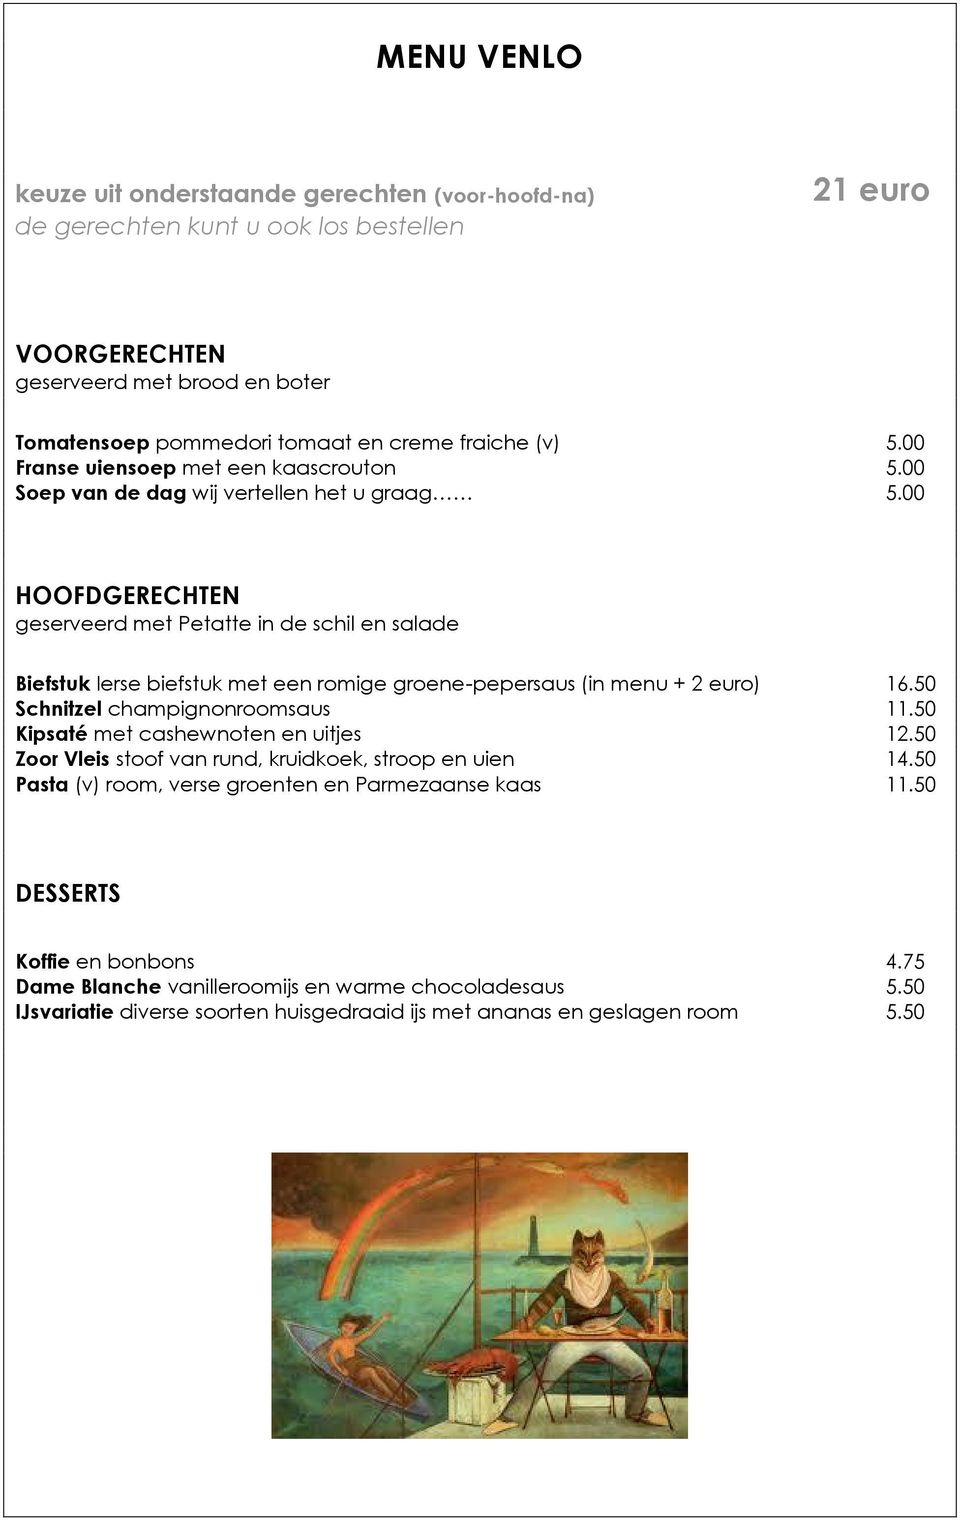 00 HOOFDGERECHTEN geserveerd met Petatte in de schil en salade Biefstuk Ierse biefstuk met een romige groene-pepersaus (in menu + 2 euro) 16.50 Schnitzel champignonroomsaus 11.